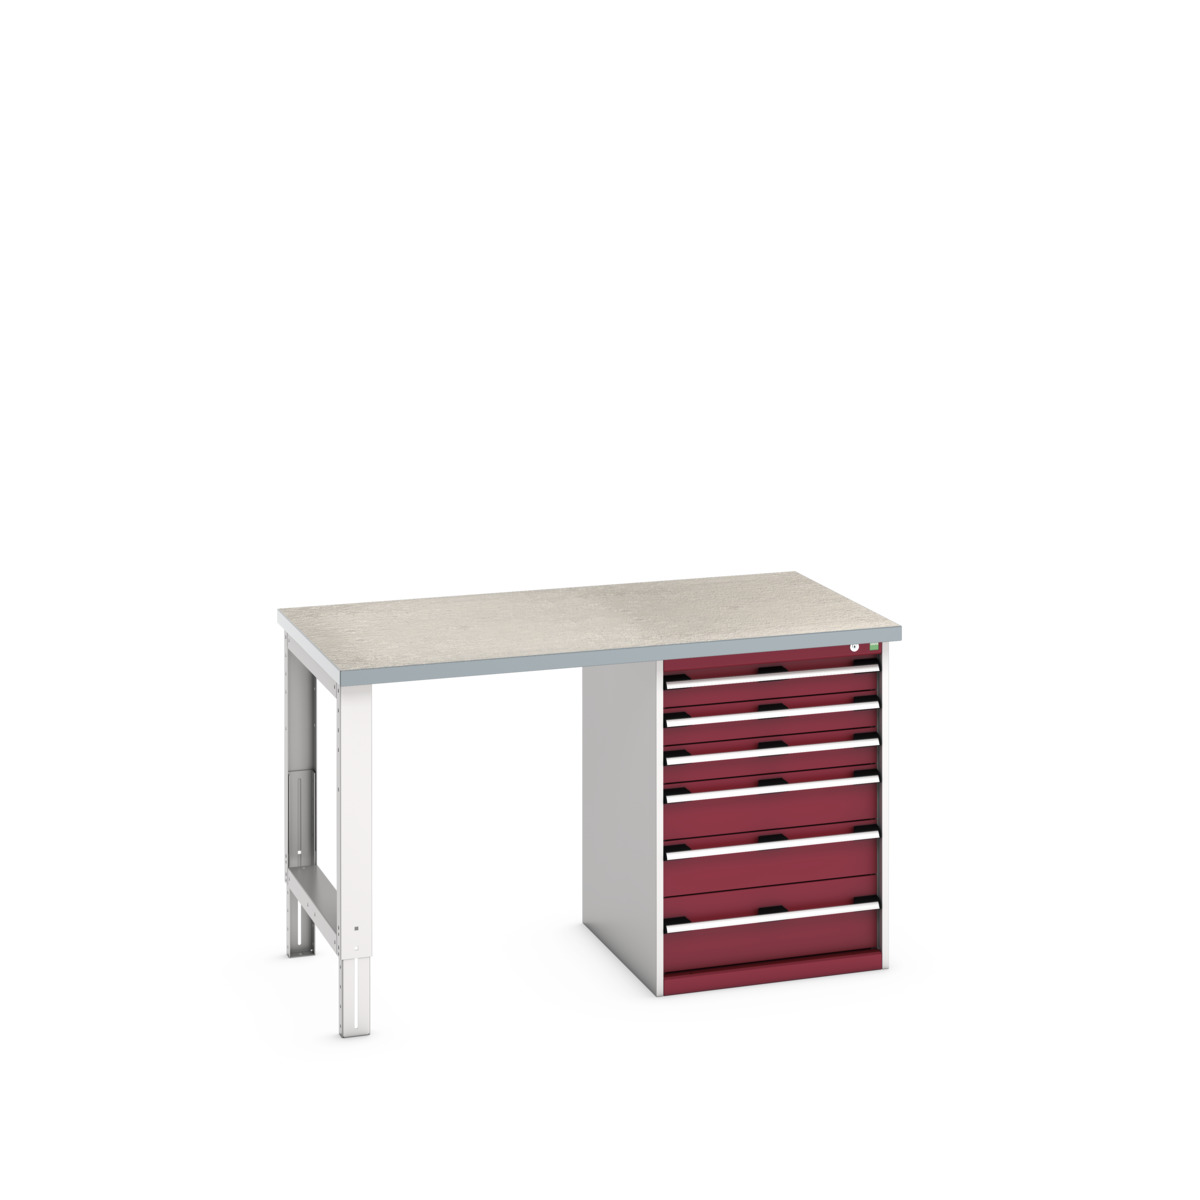 41004118.24V - cubio pedestal bench (lino)